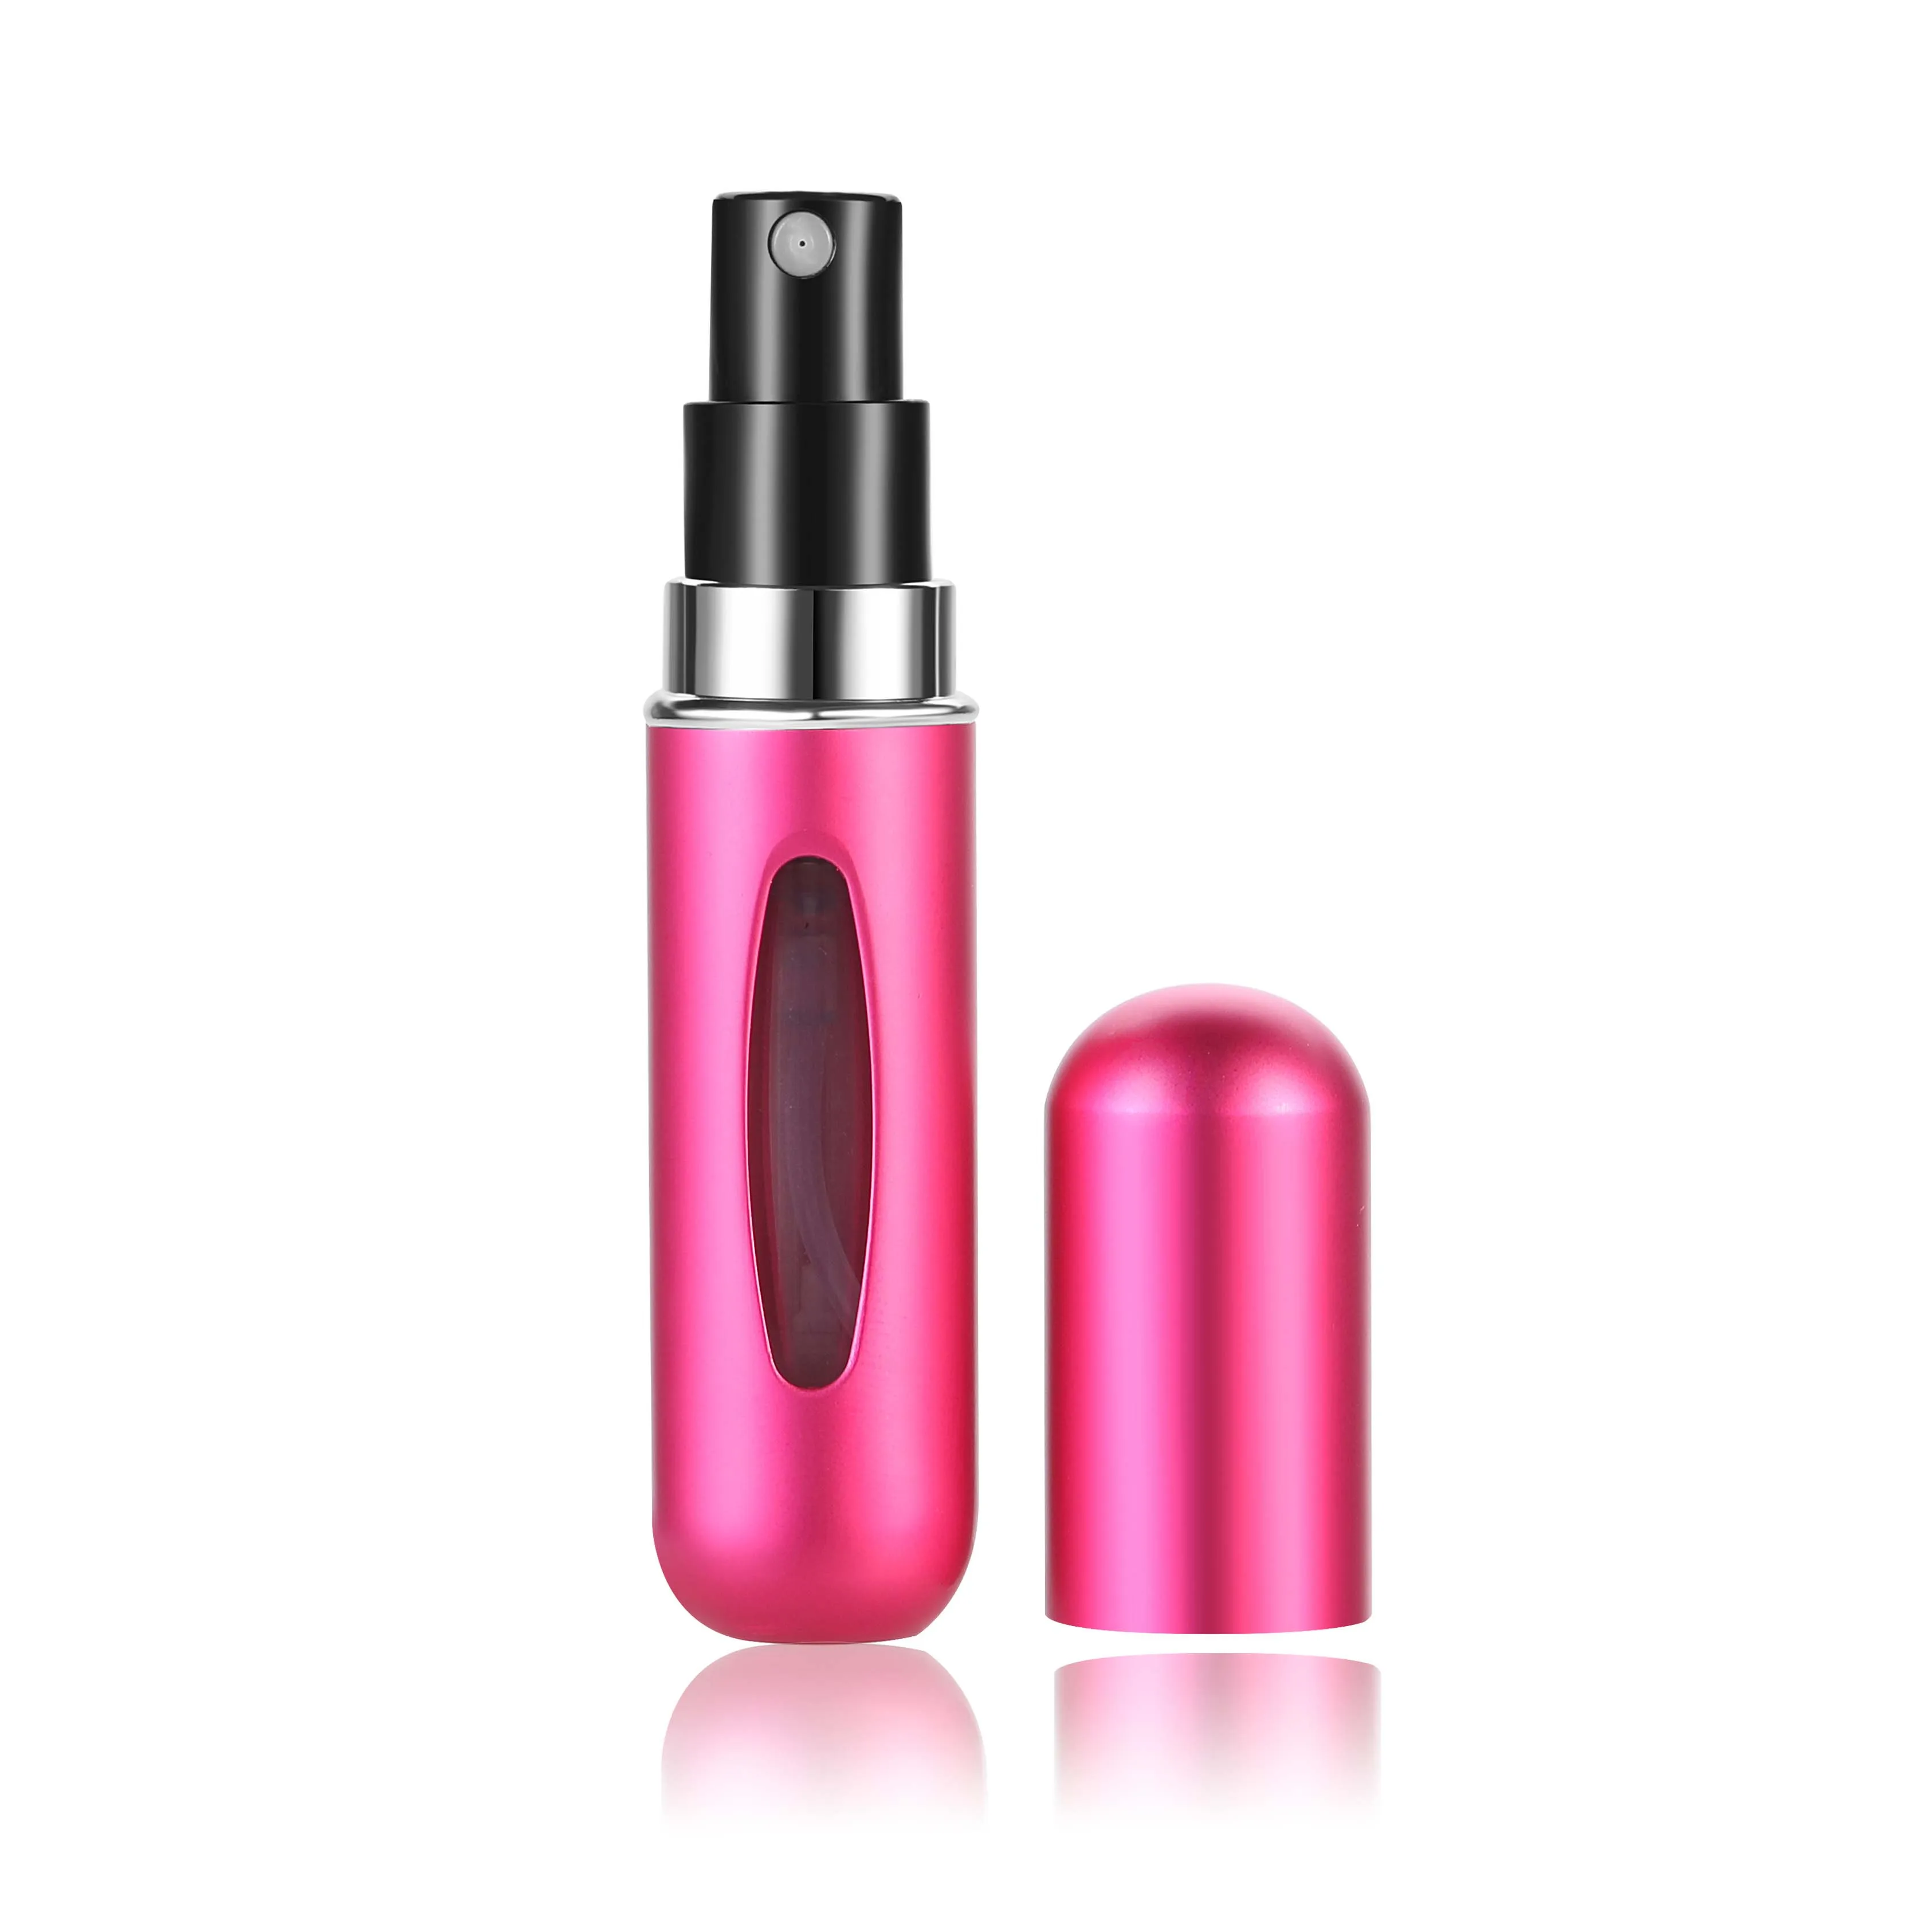 MUB-5ml мини многоразовая Удобная пустая бутылка для парфюмерии с распылителем насос алюминиевая спрей бутылка-контейнер для косметики путешествия Parfum подарок - Цвет: Rose red